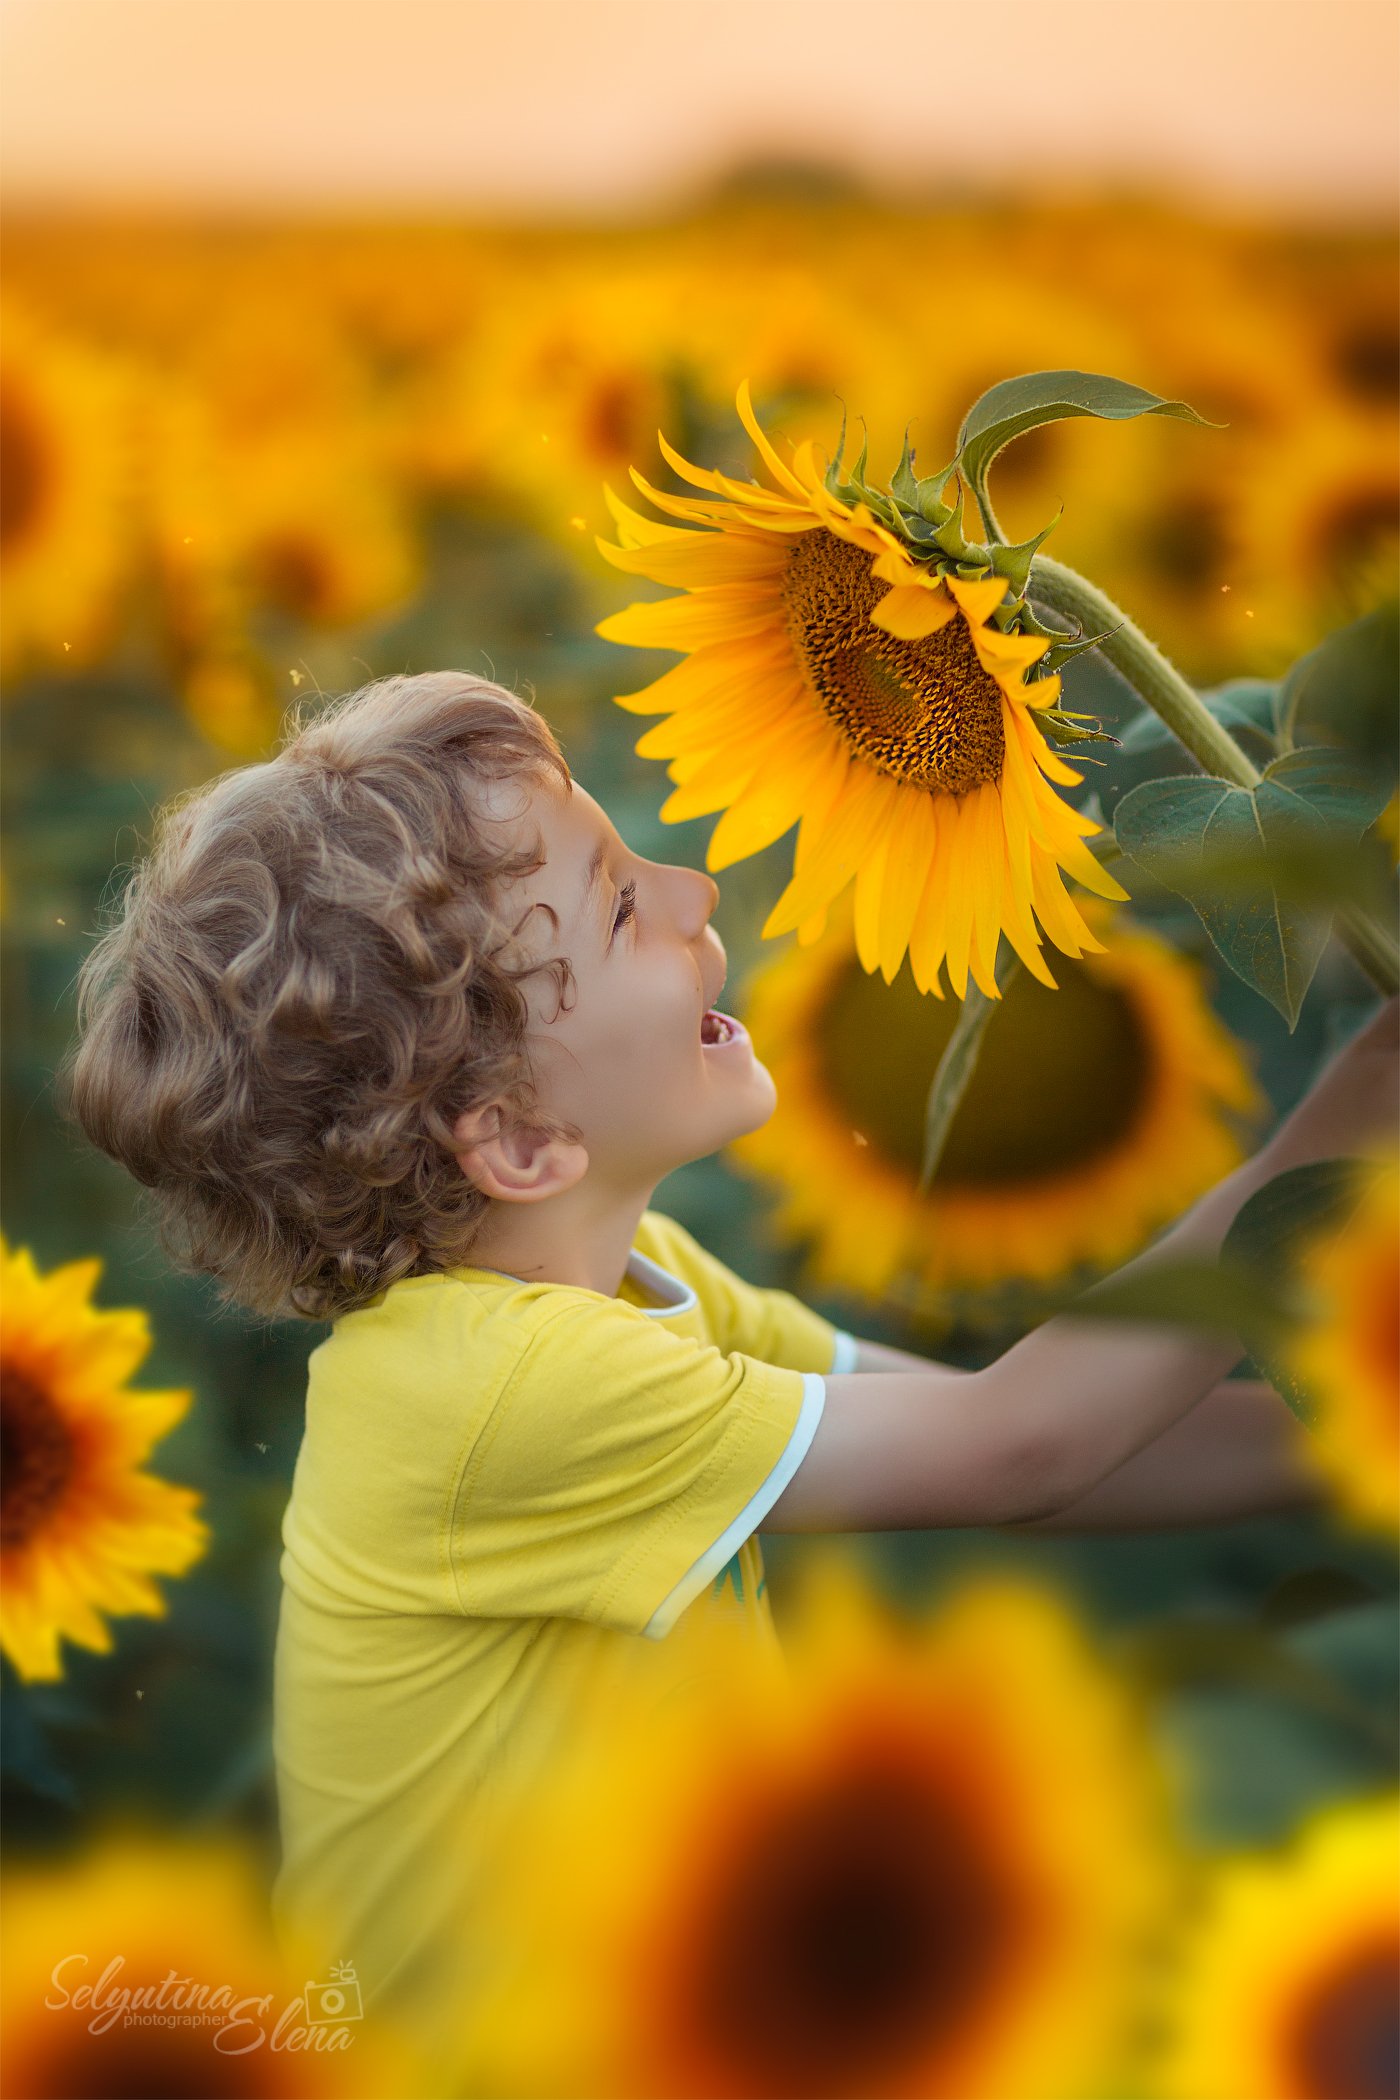 подсолнух, детское фото, детский фотограф, поля подсолнухов, sunflower, sunflowers field, children photography, Elena Selyutina